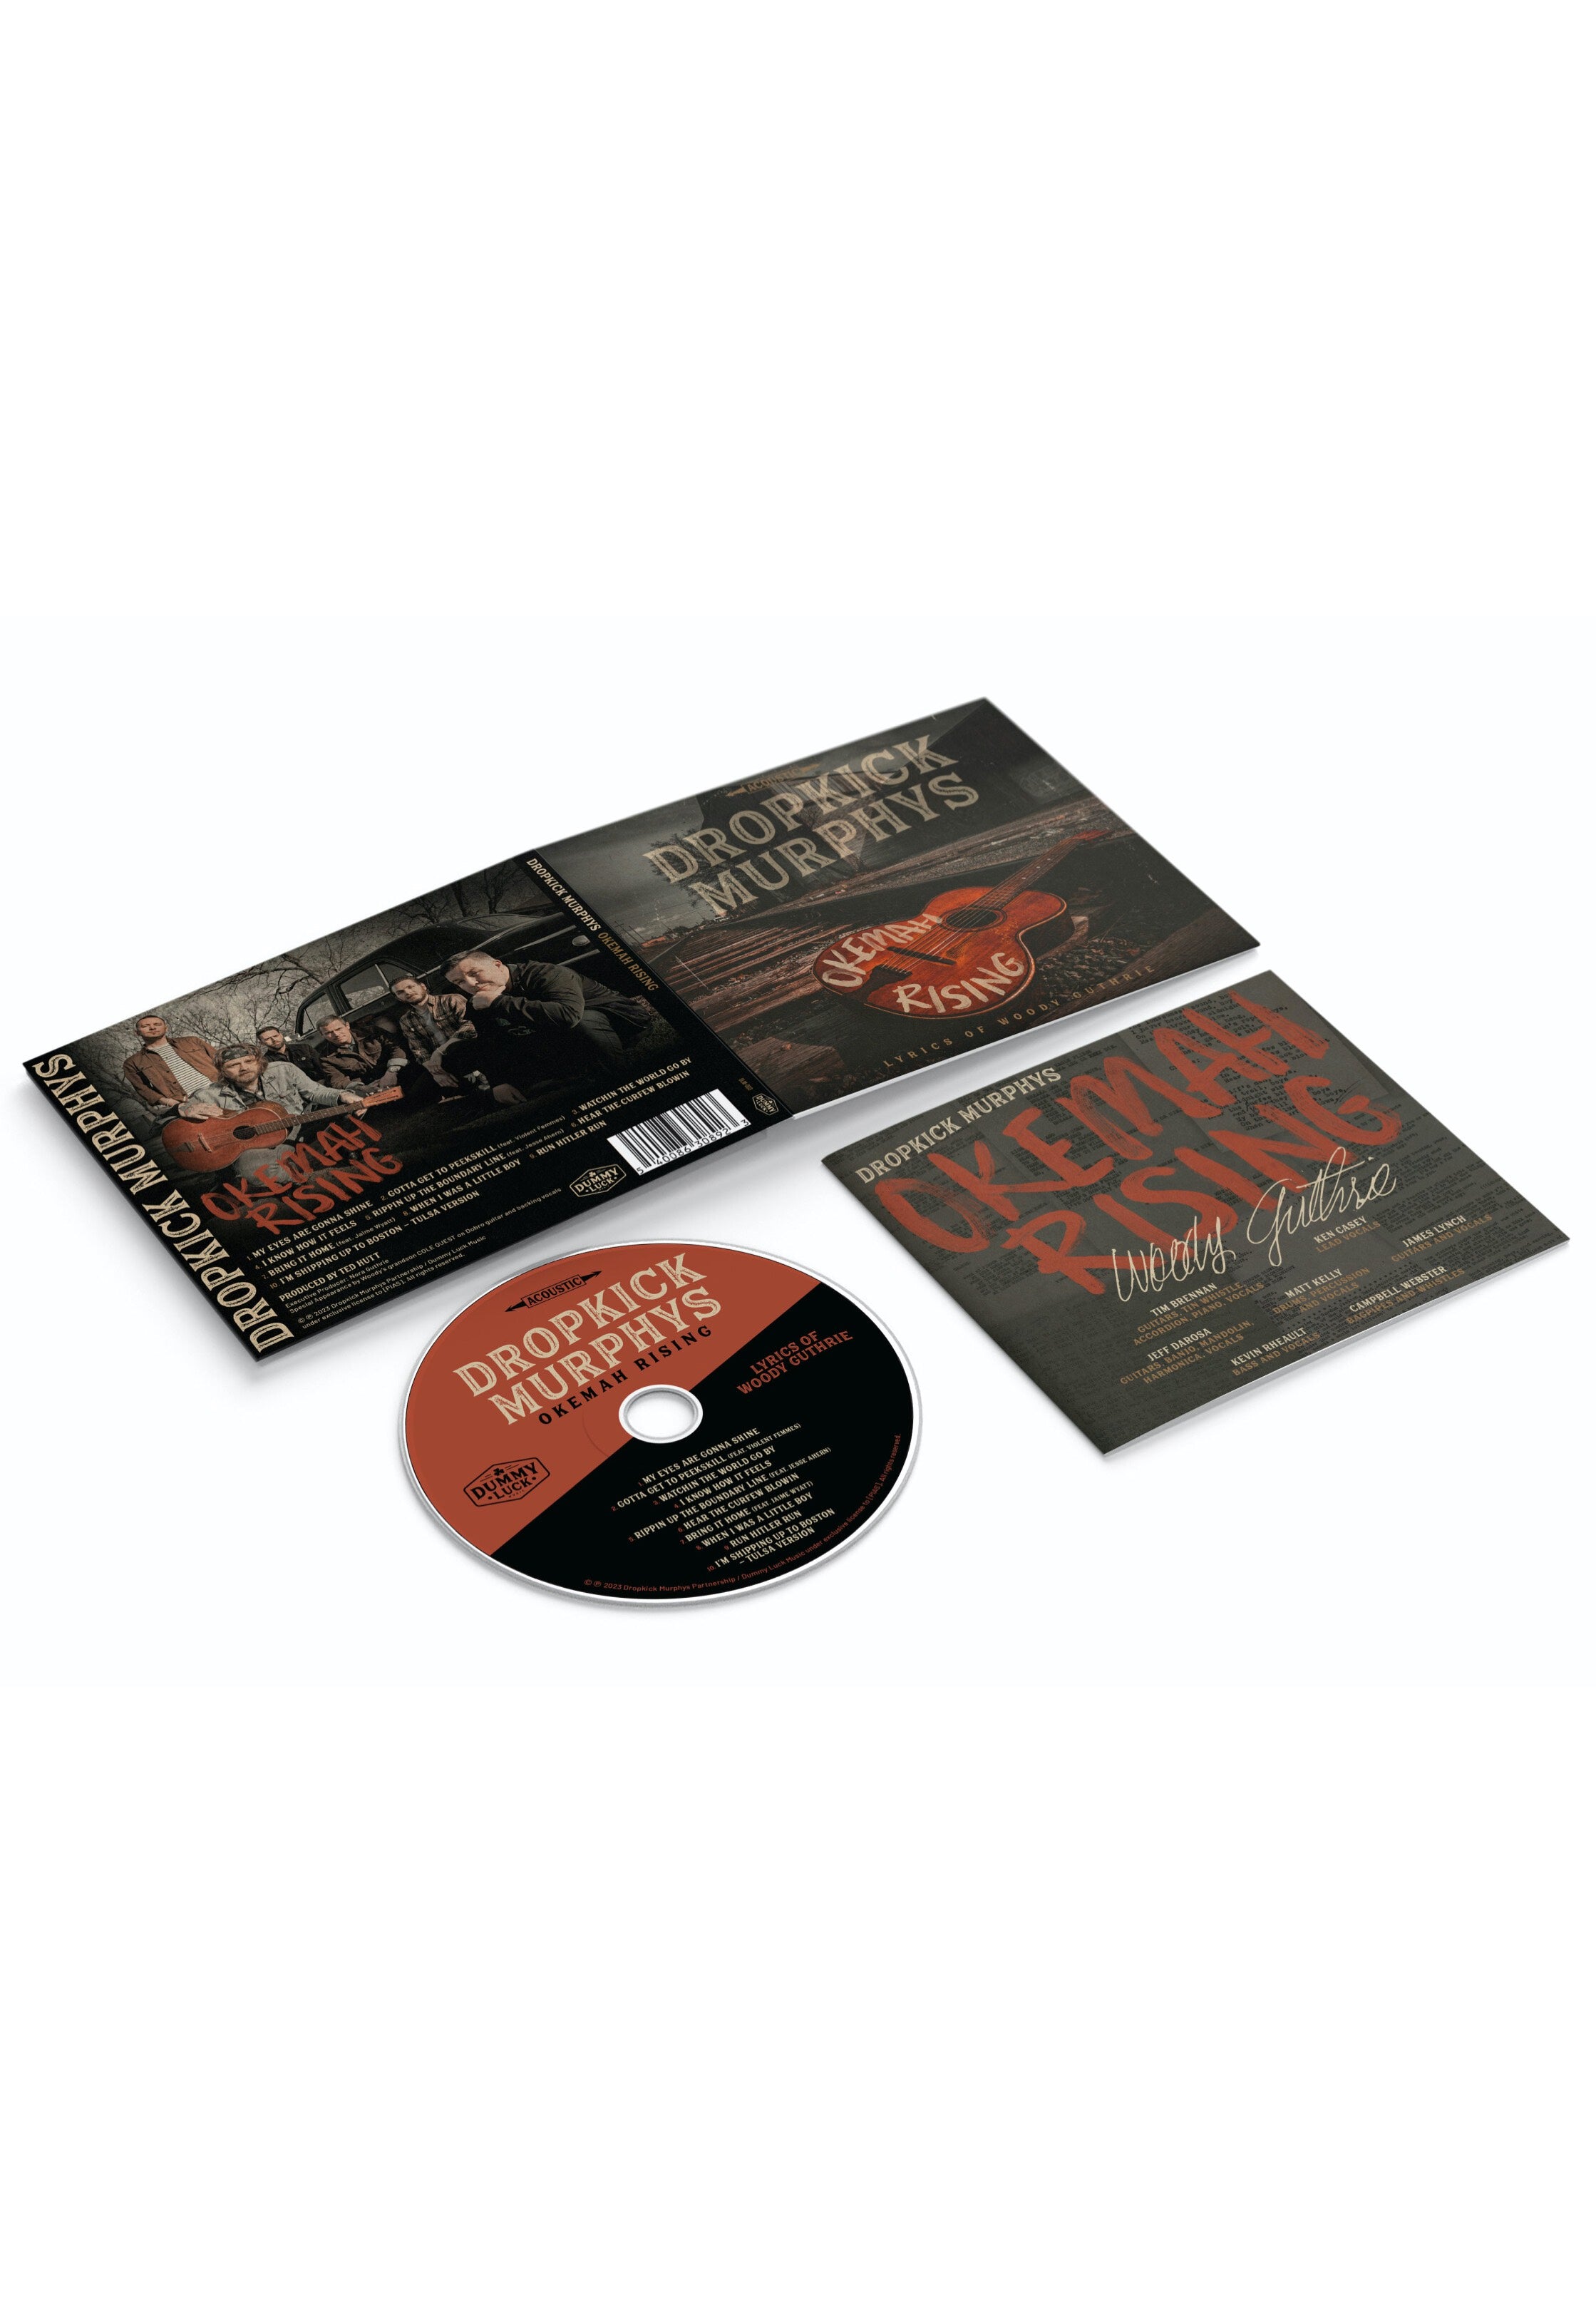 Dropkick Murphys - Okemah Rising - Digipak CD